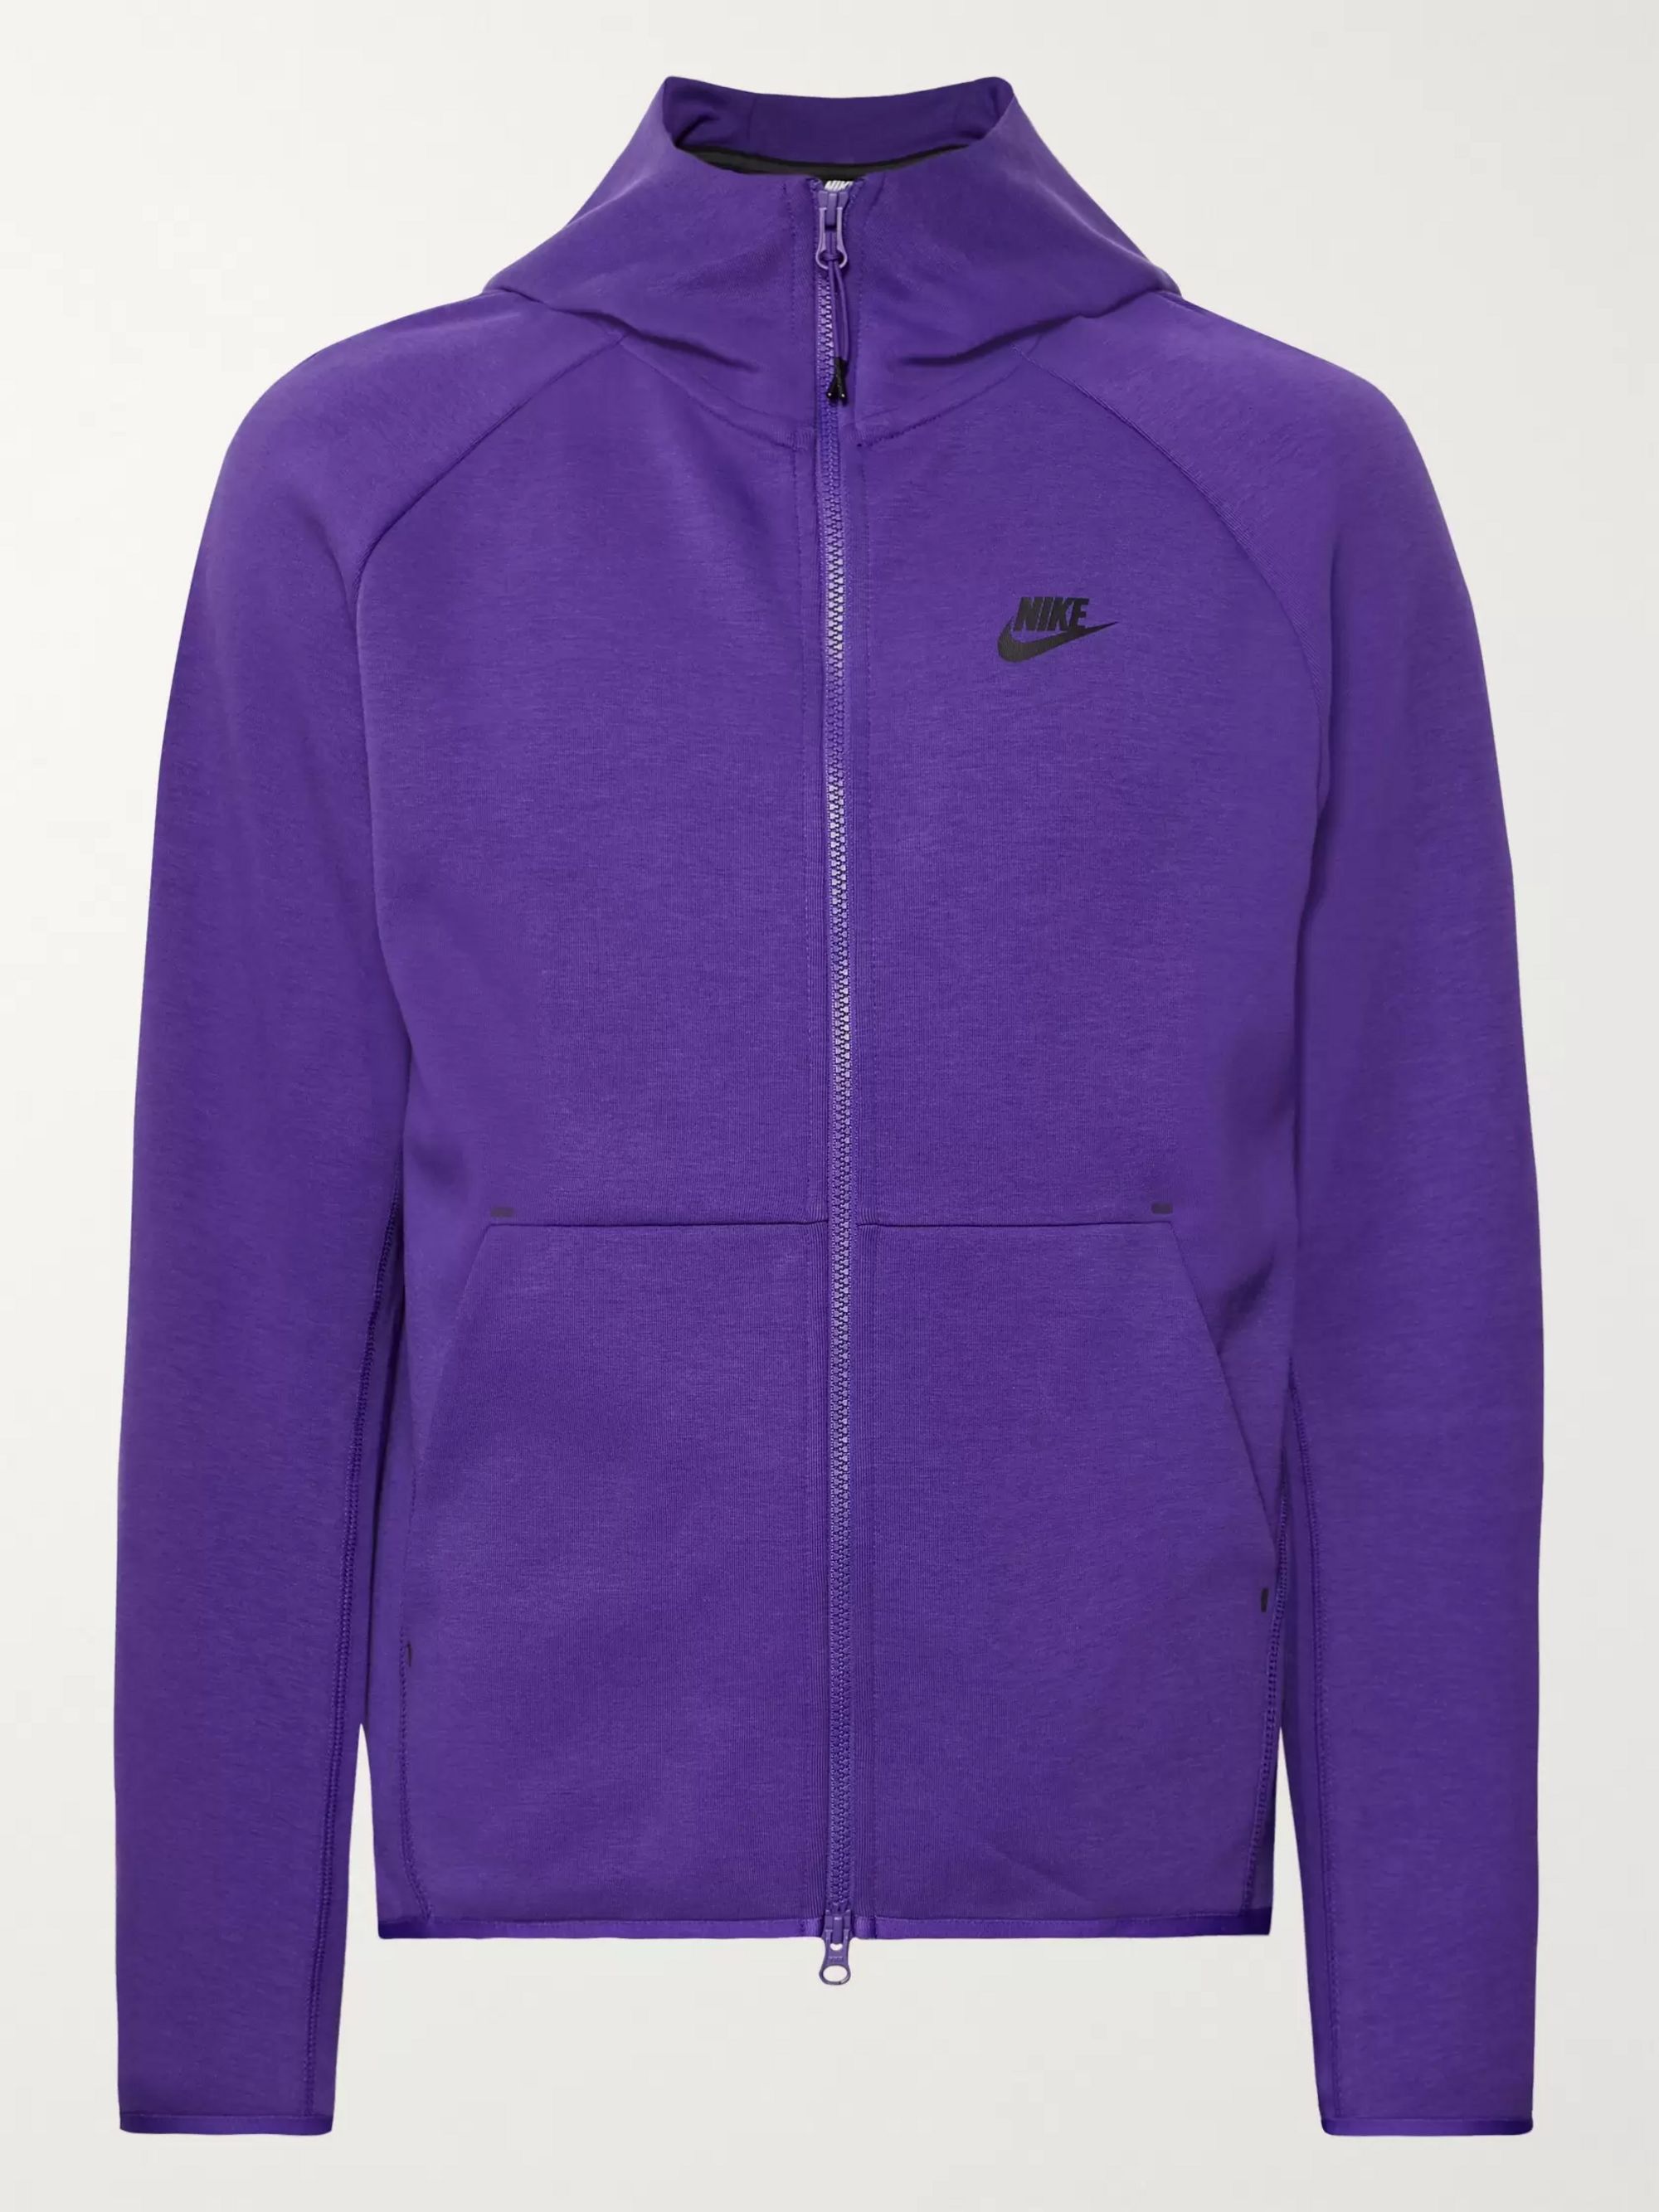 purple sweatsuit nike